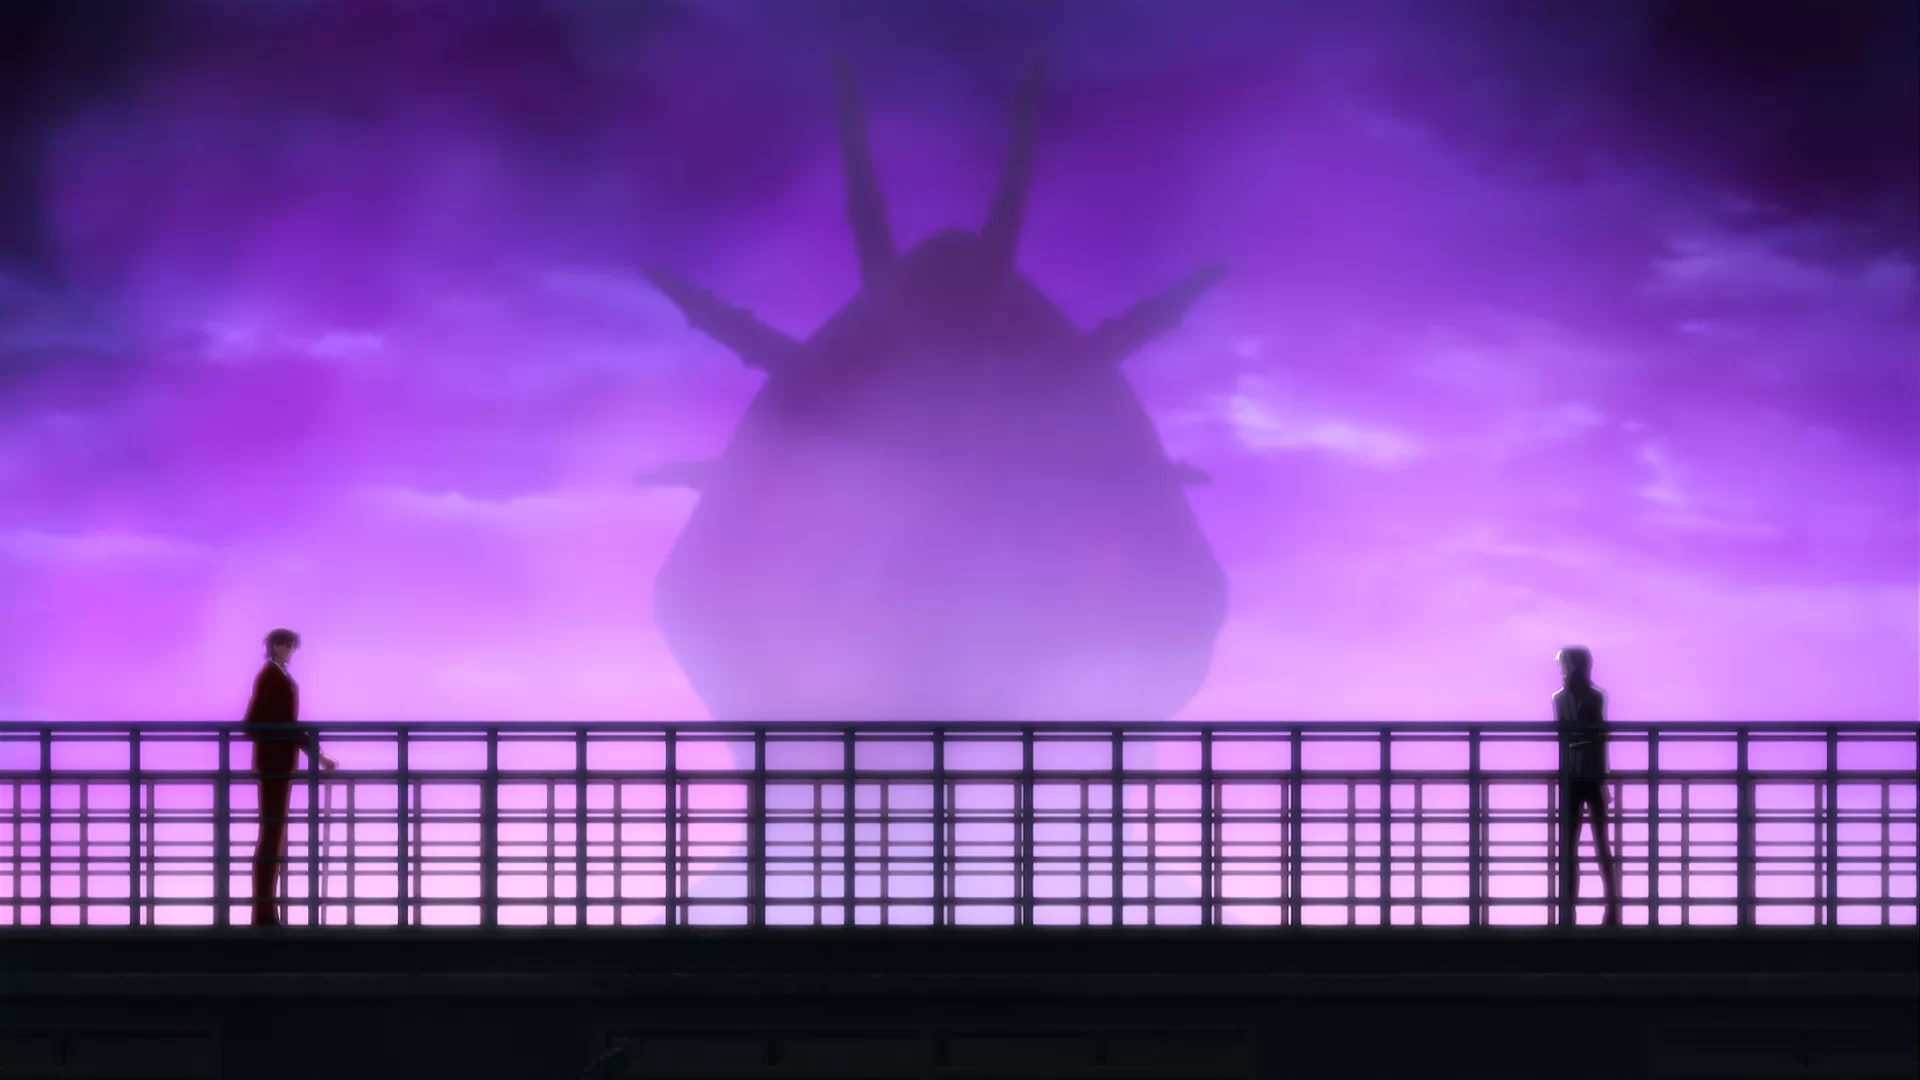 Minaturka 14 odcinka anime Fate/Zero